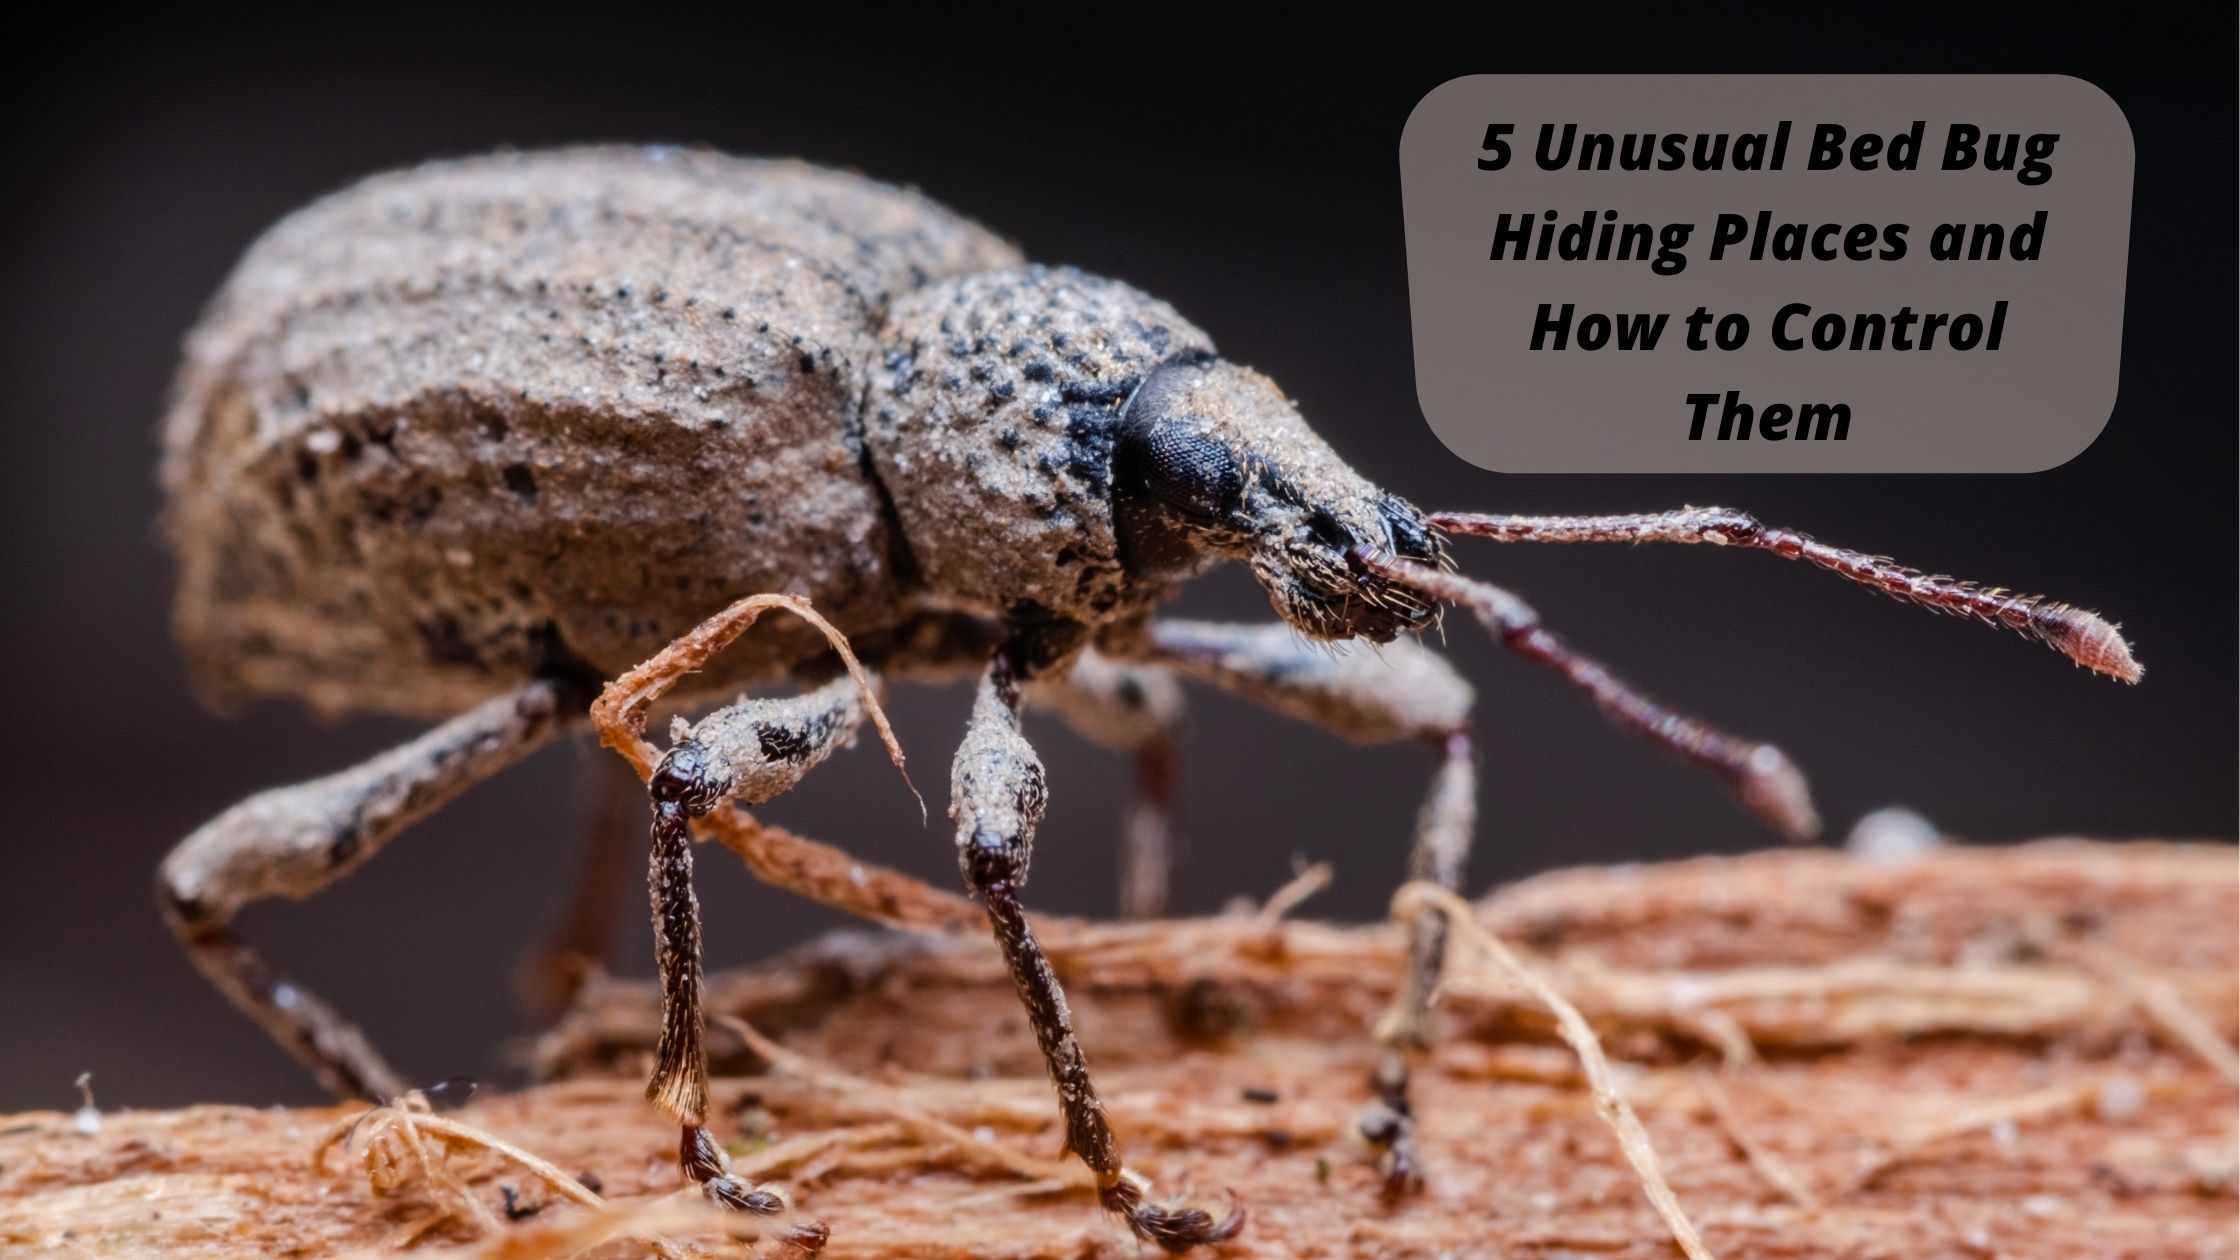 5 Unusual Bed Bug Hiding Places